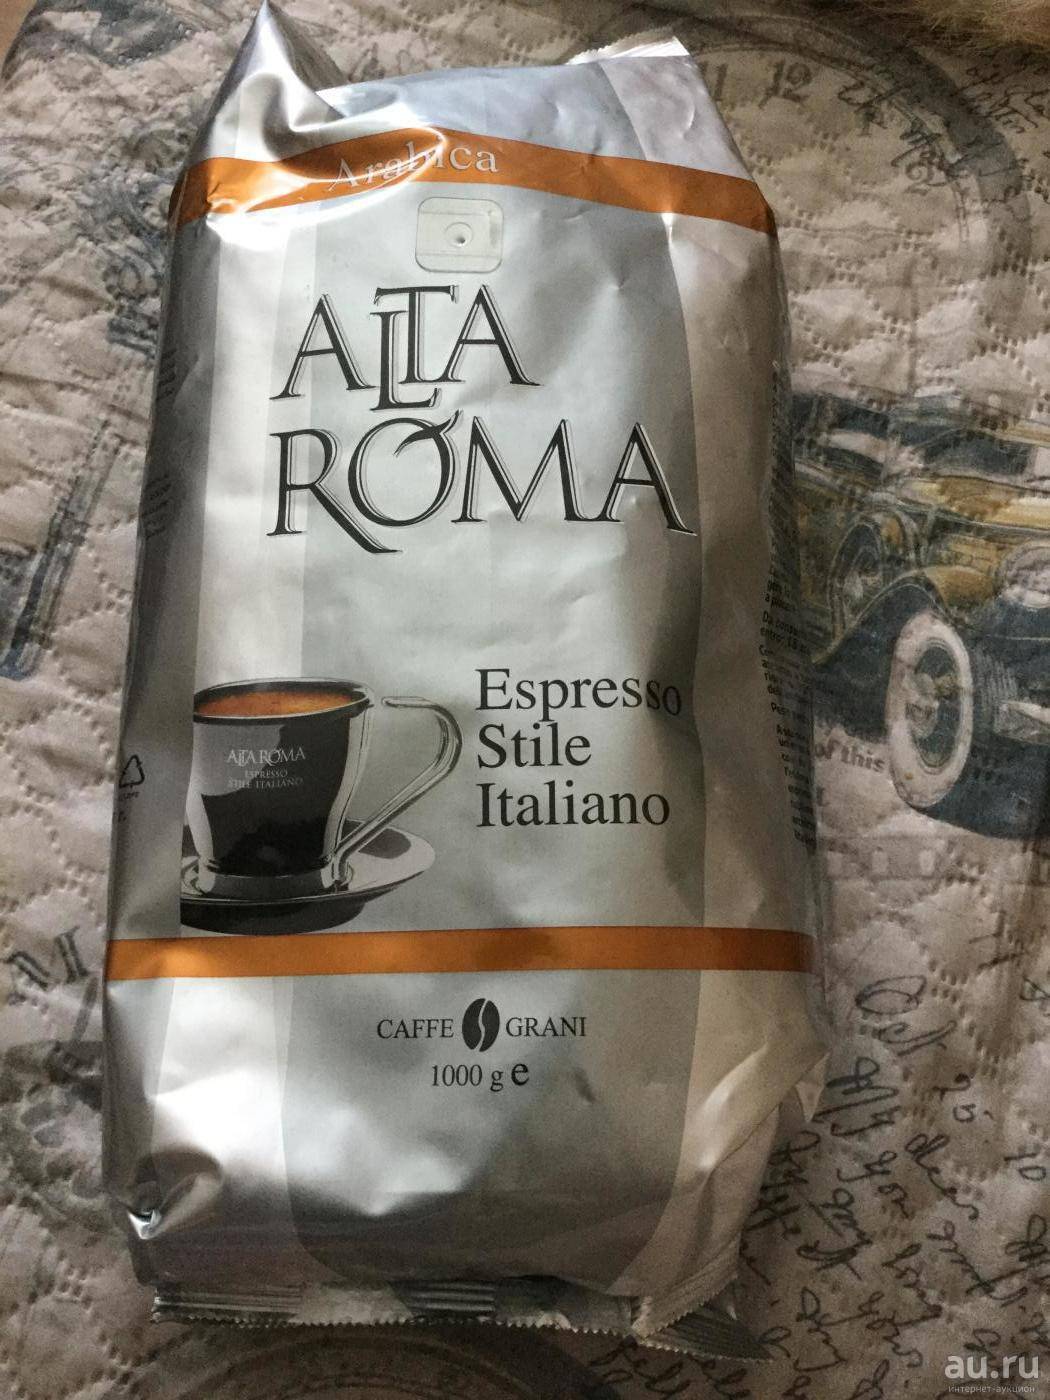 Кофе lavazza или кофе alta roma — что лучше